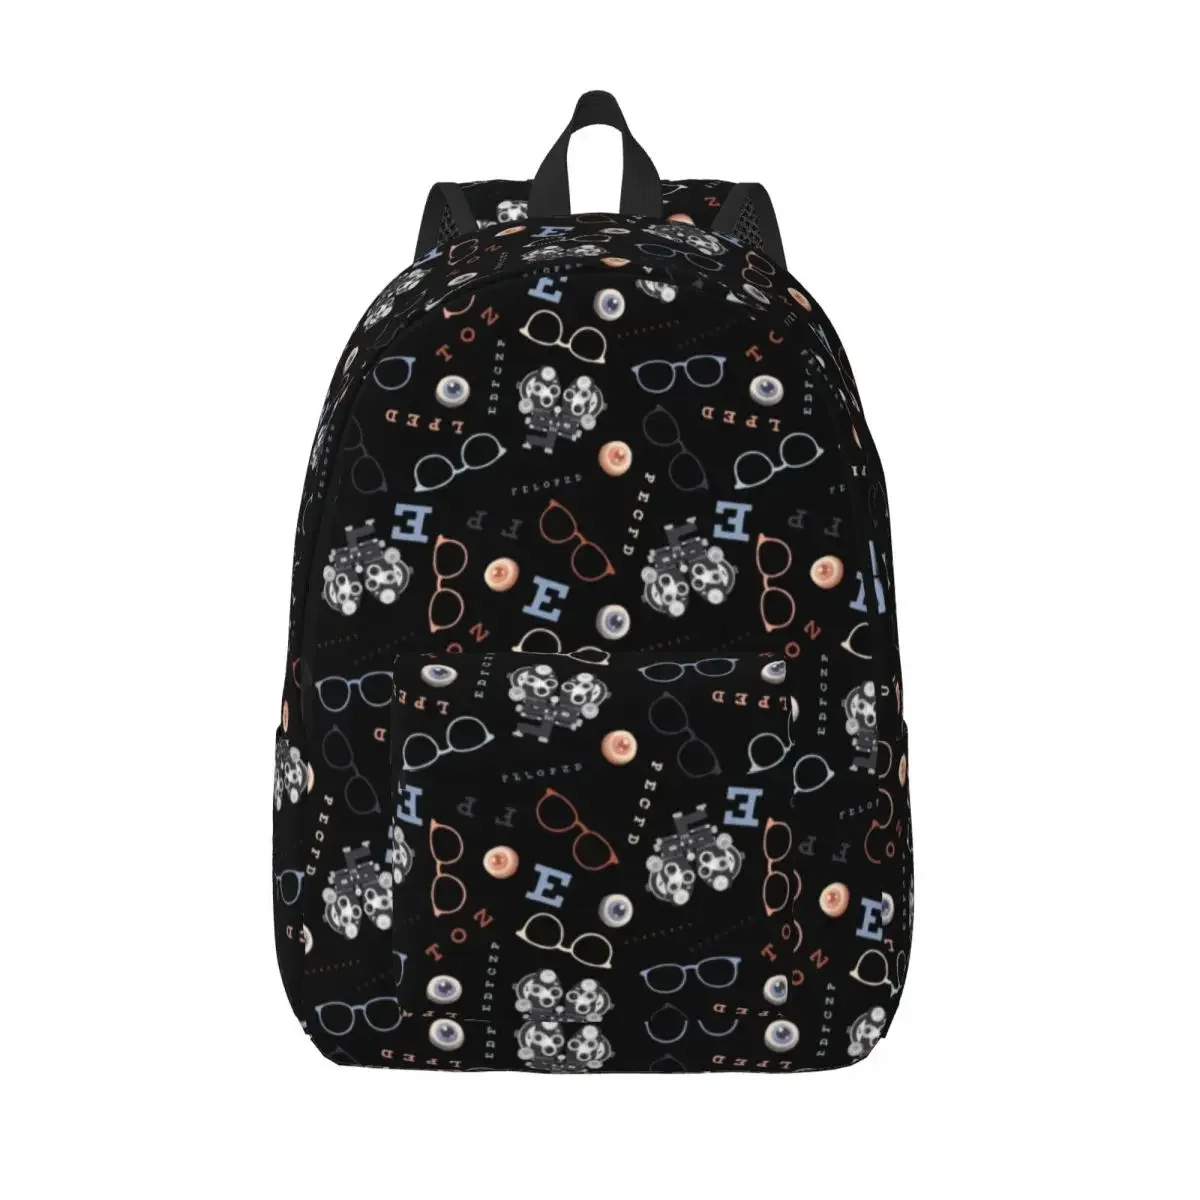 

Оптометрический дорожный холщовый рюкзак для мужчин и женщин, школьный портфель для компьютера и очков, школьный ранец с надписью Snellen, студенческий рюкзак для колледжа